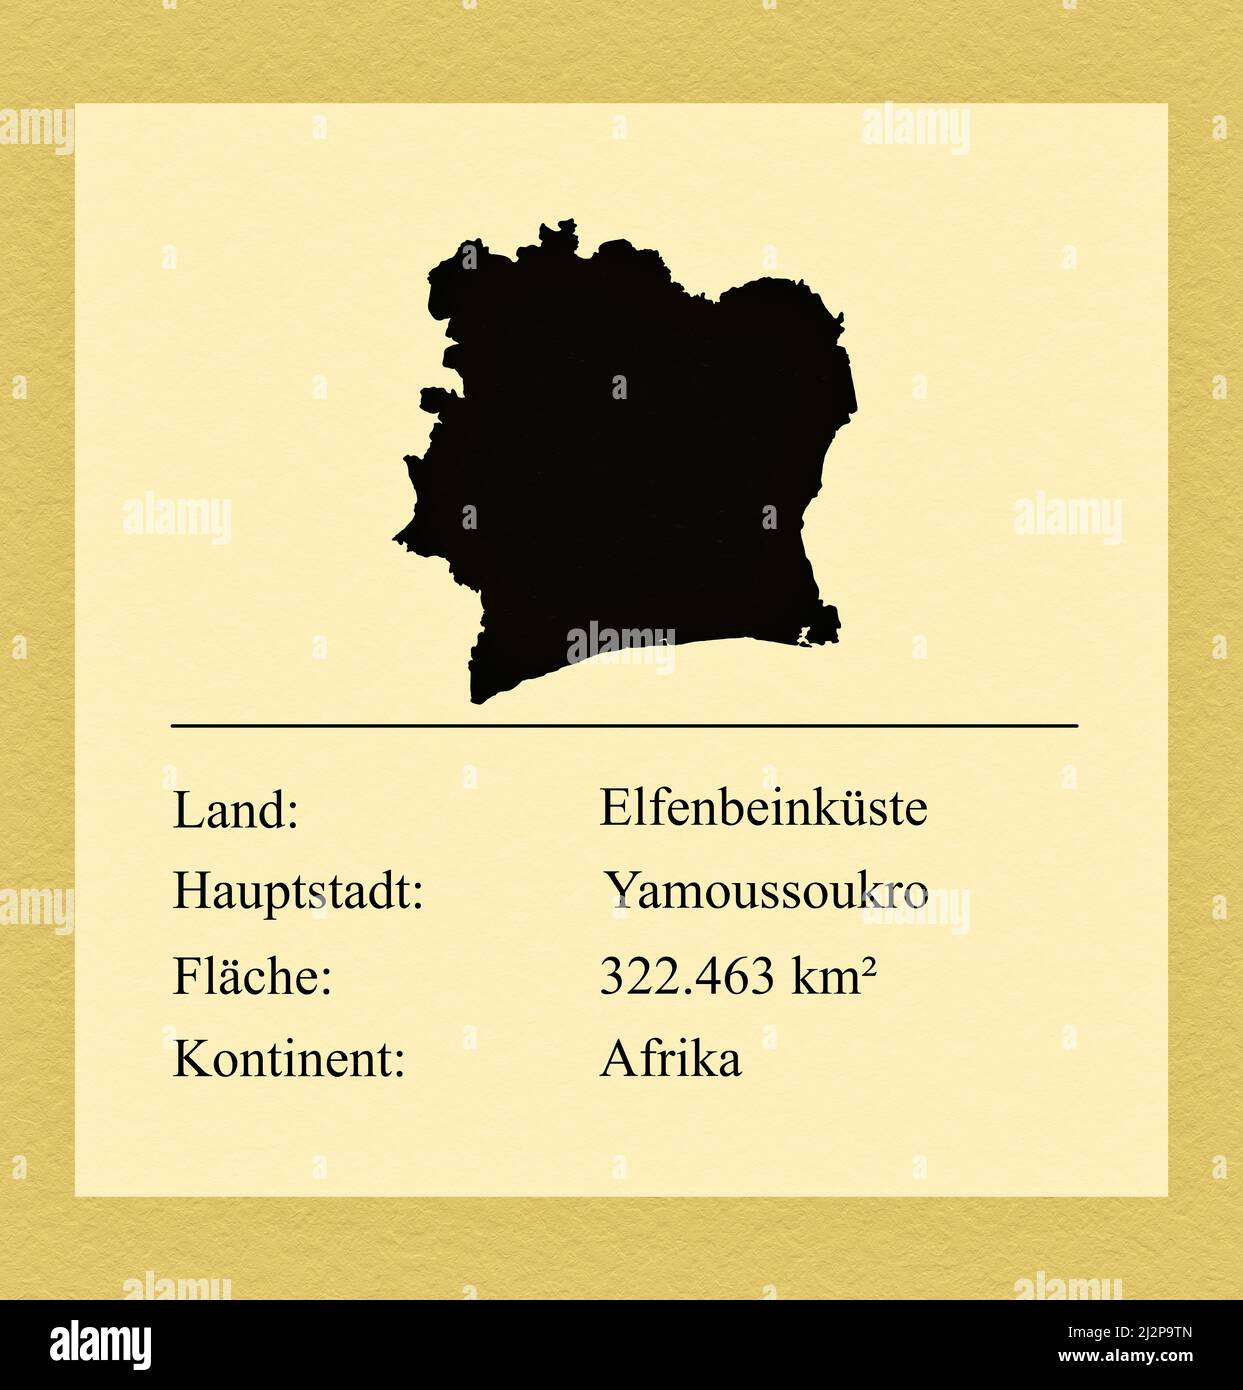 Umrisse des Landes Elfenbeinküste, darunter ein kleiner Steckbrief mit Ländernamen, Hauptstadt, Fläche und Kontinent Foto Stock